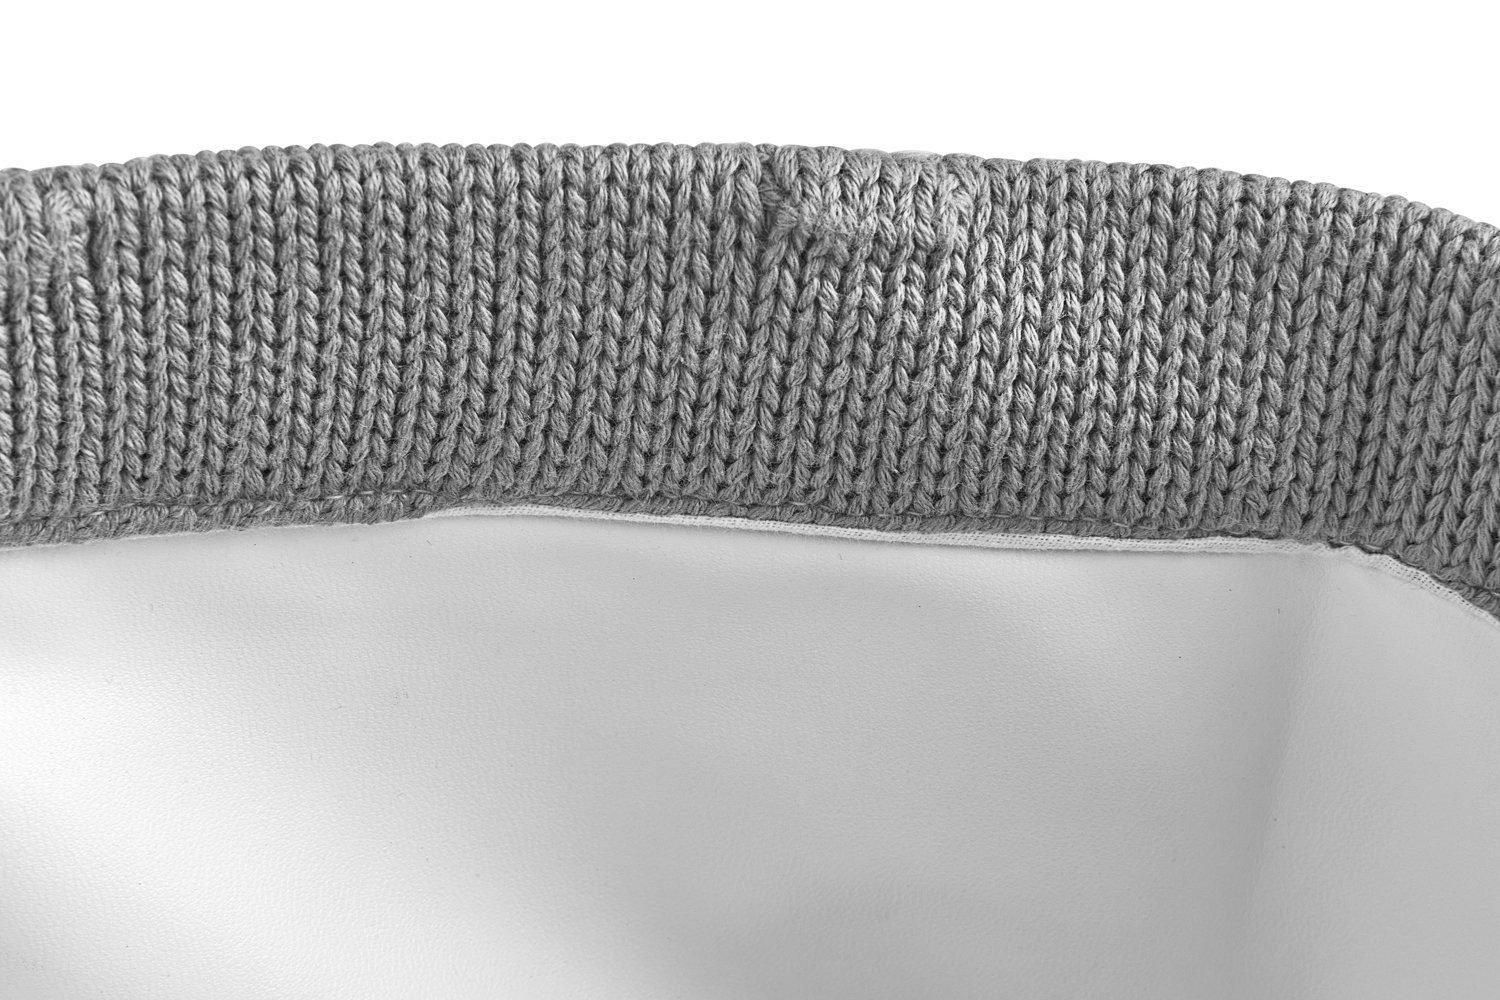 (1 Meyco St), Dekokorb Baby Grey Knots Small